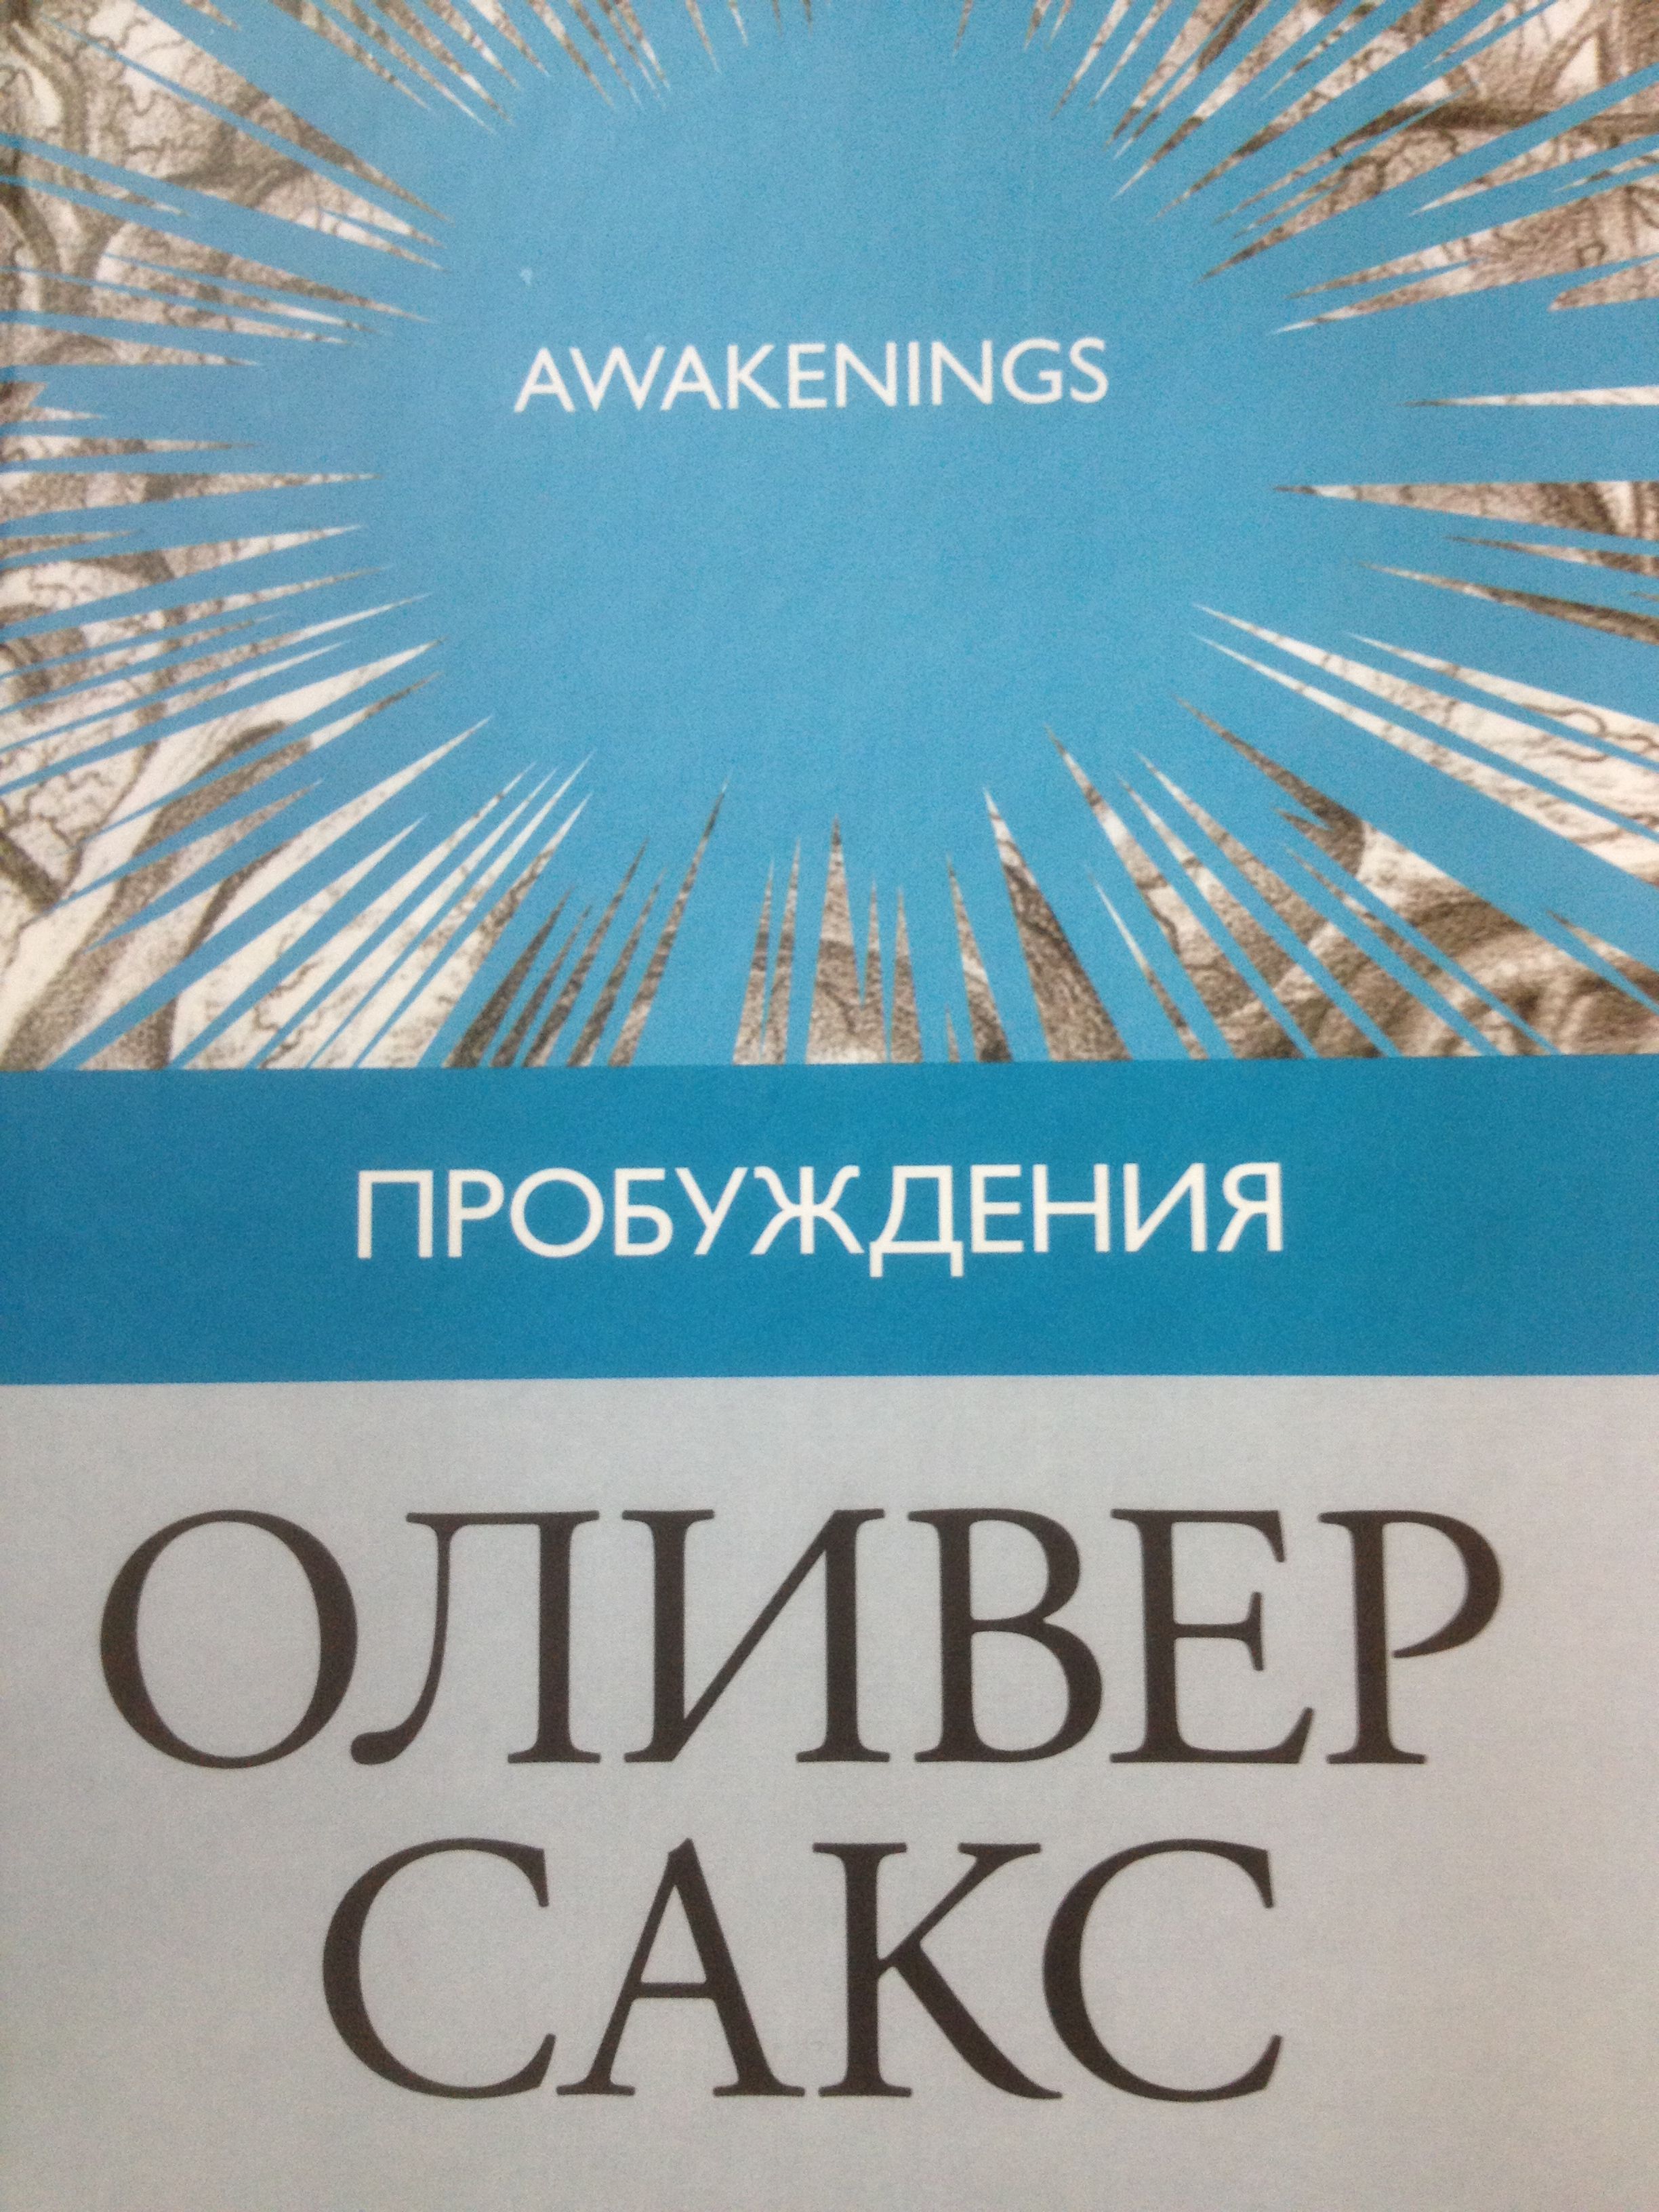 Обложка книги "Пробуждения"